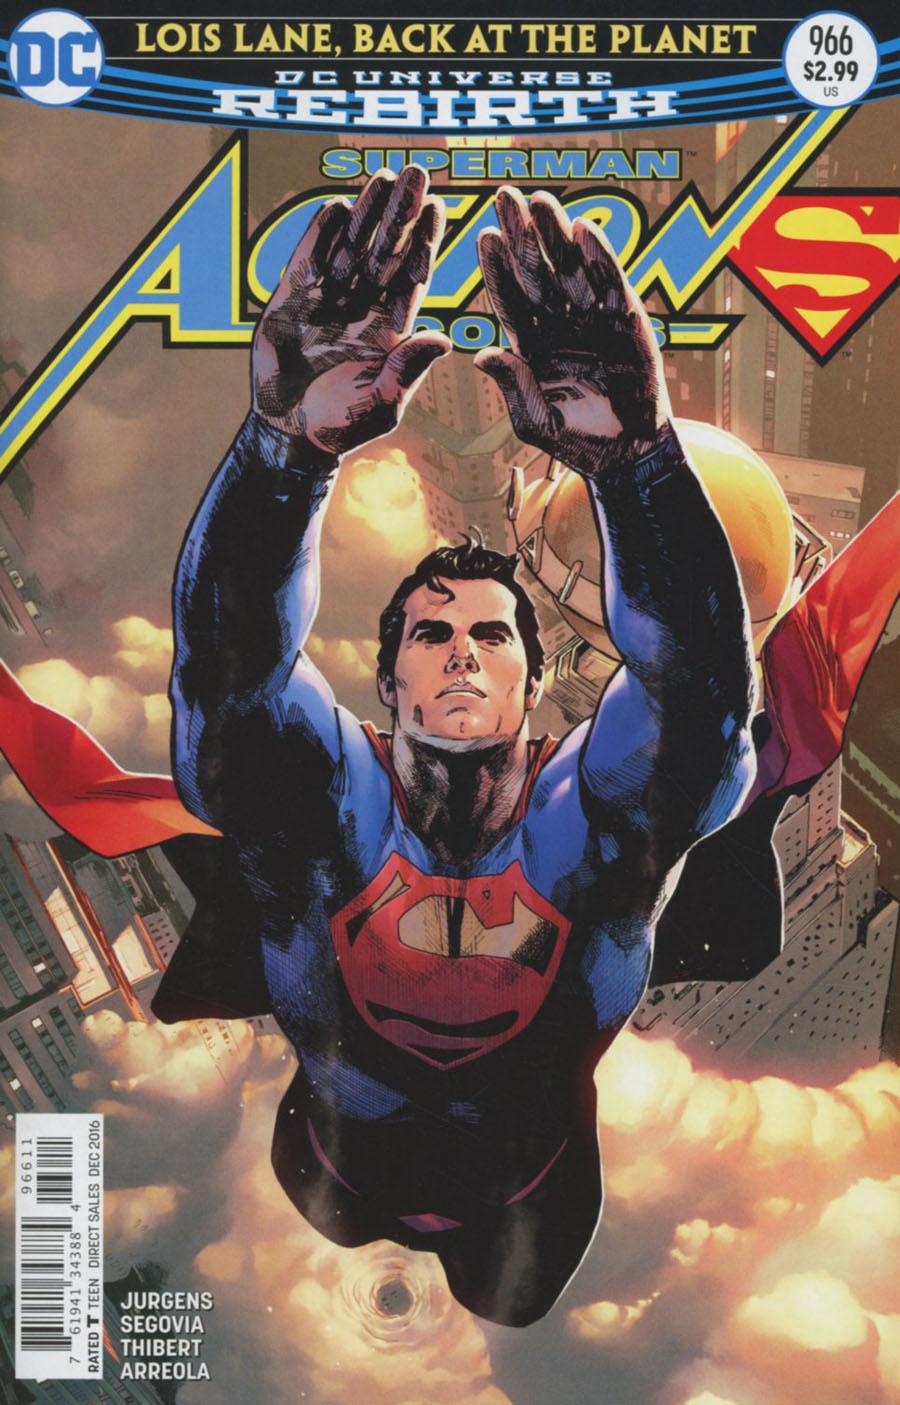 Action Comics Vol. 2 #966